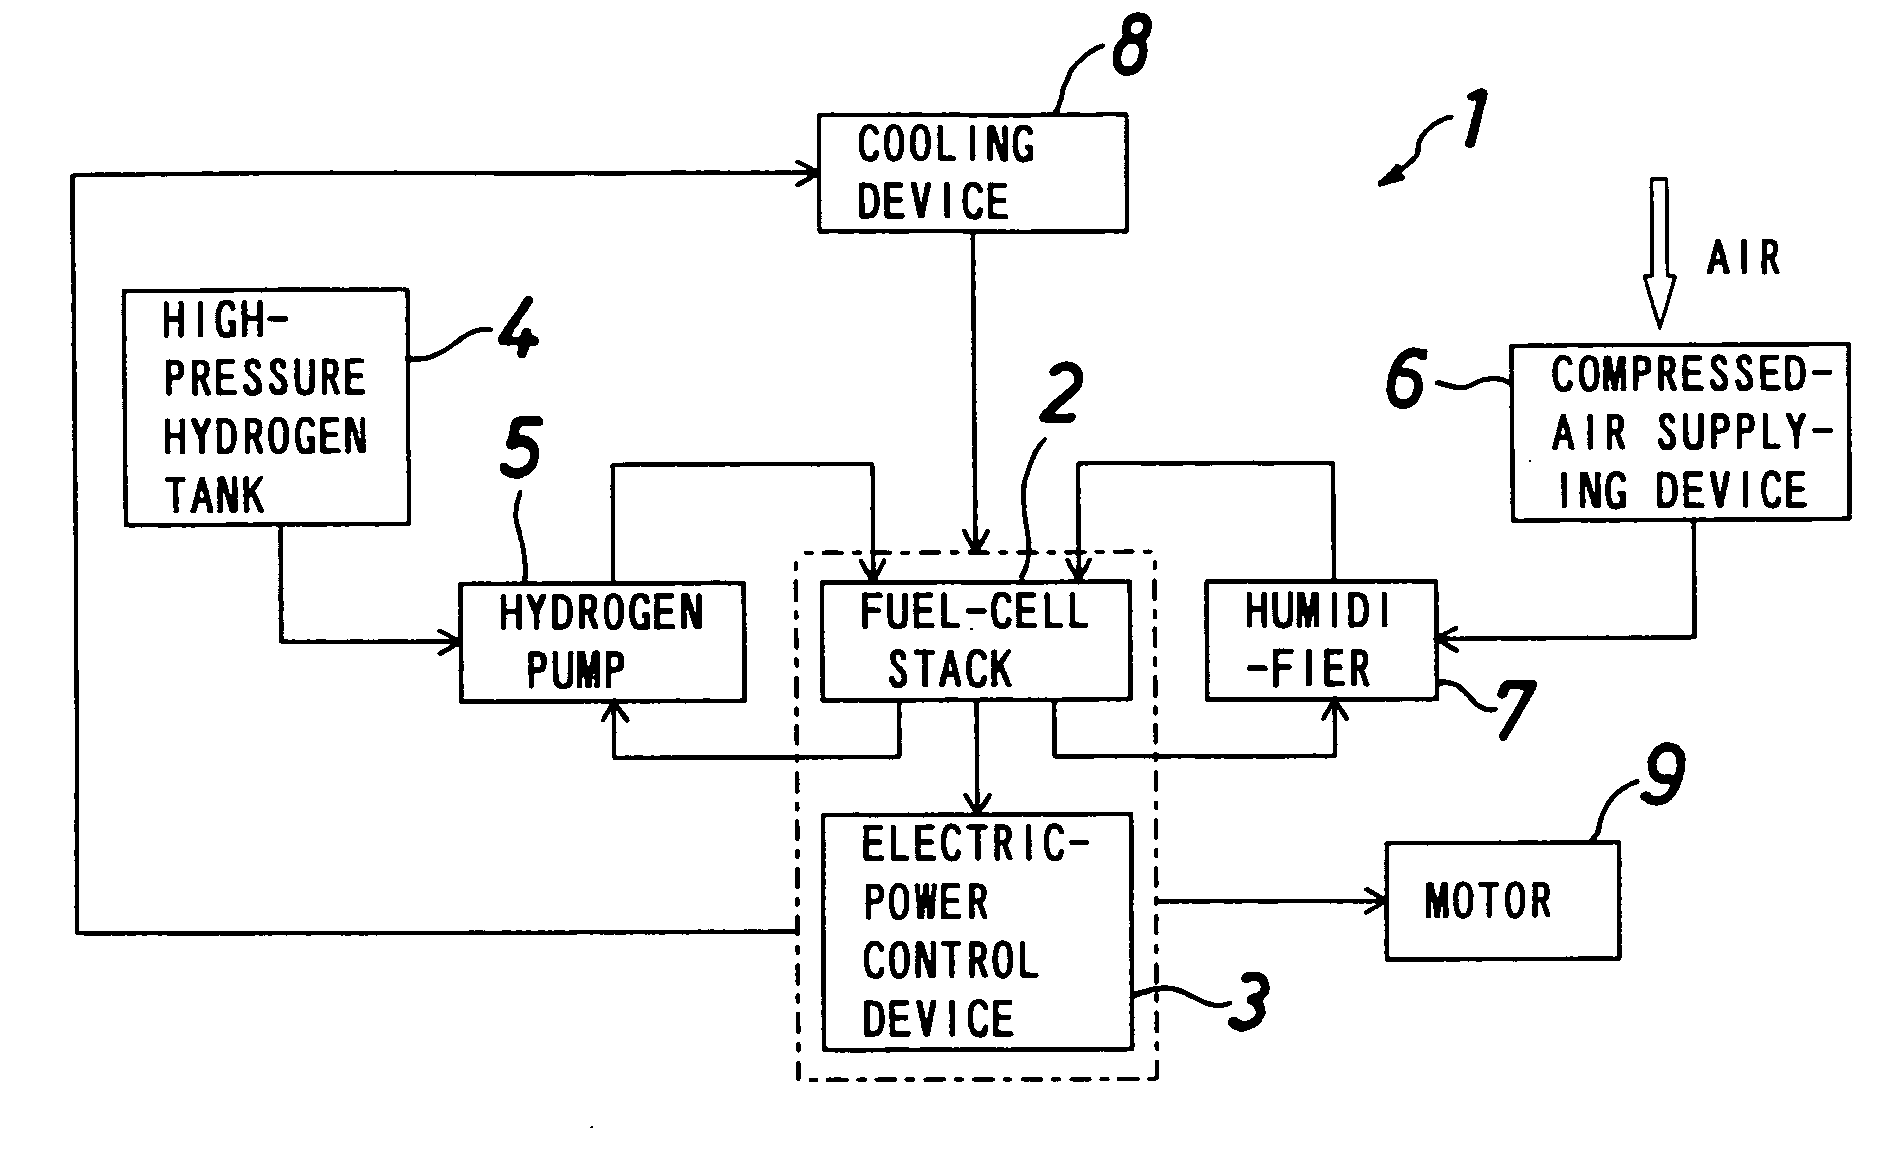 Fuel-cell apparatus